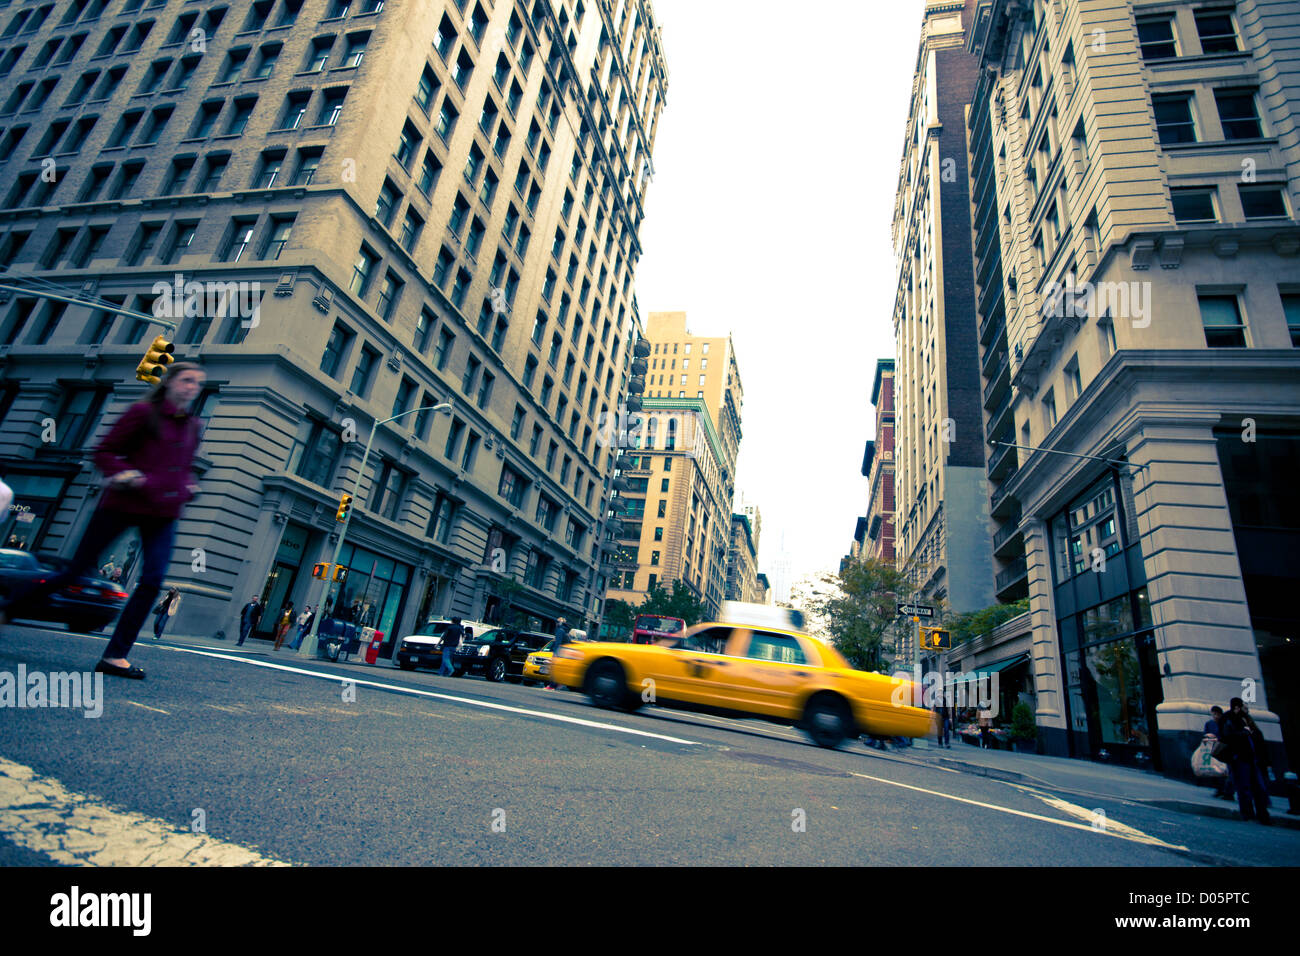 Ottobre 26, 2012 - New York City: intersezione lungo la 5th Avenue nel centro di Manhattan il 26 ottobre, 2012. Foto Stock